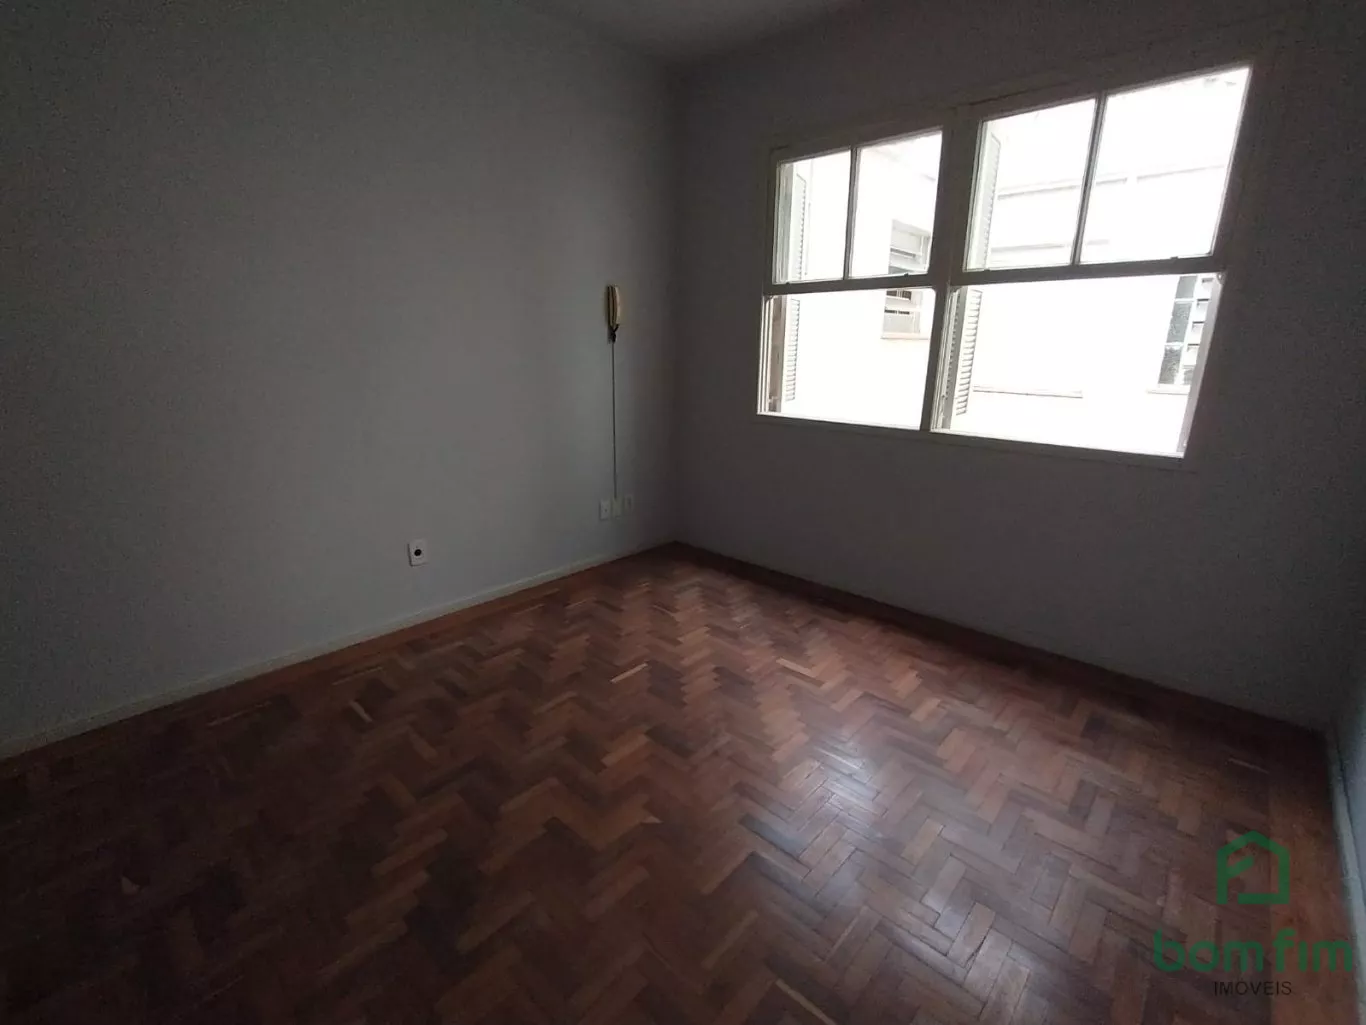 Apartamento em Petrópolis, Porto Alegre/RS de 40m² 1 quartos para locação R$ 700,00/mes